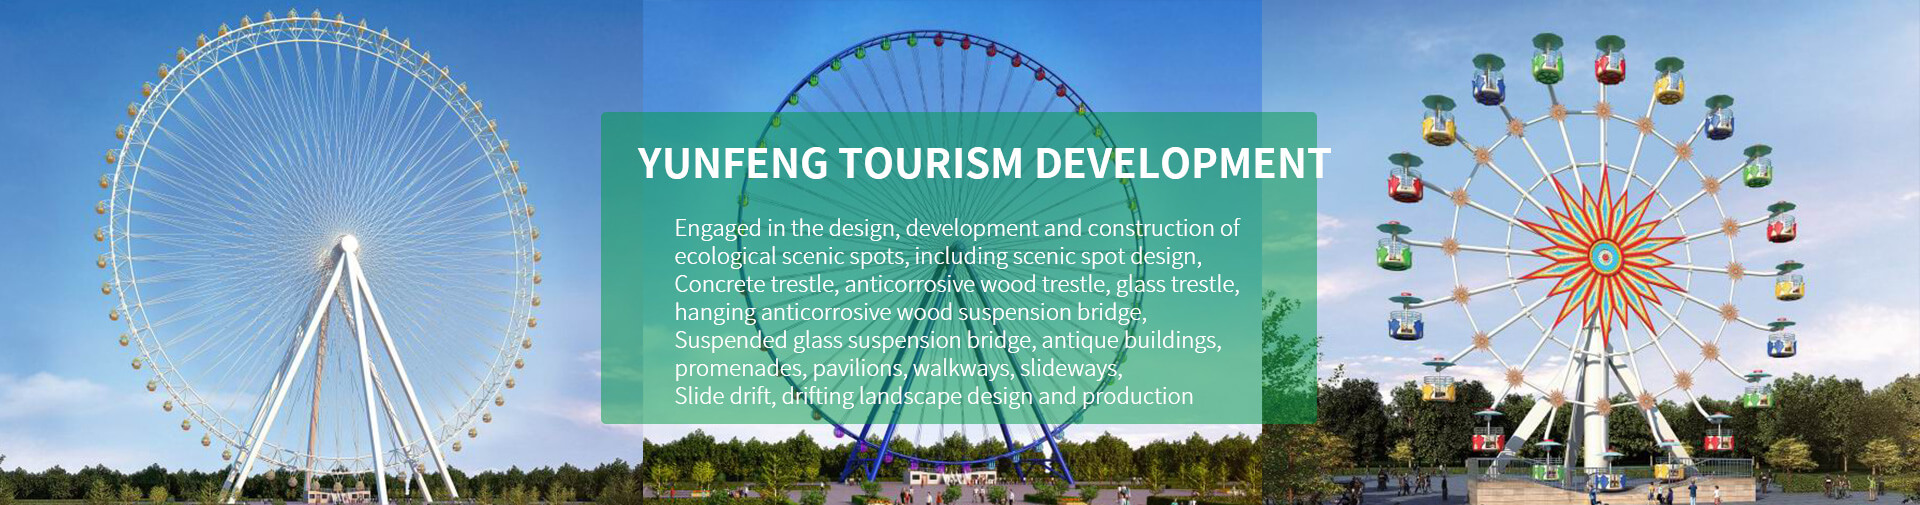 Henan Yunfeng Tourism Development Co., Ltd